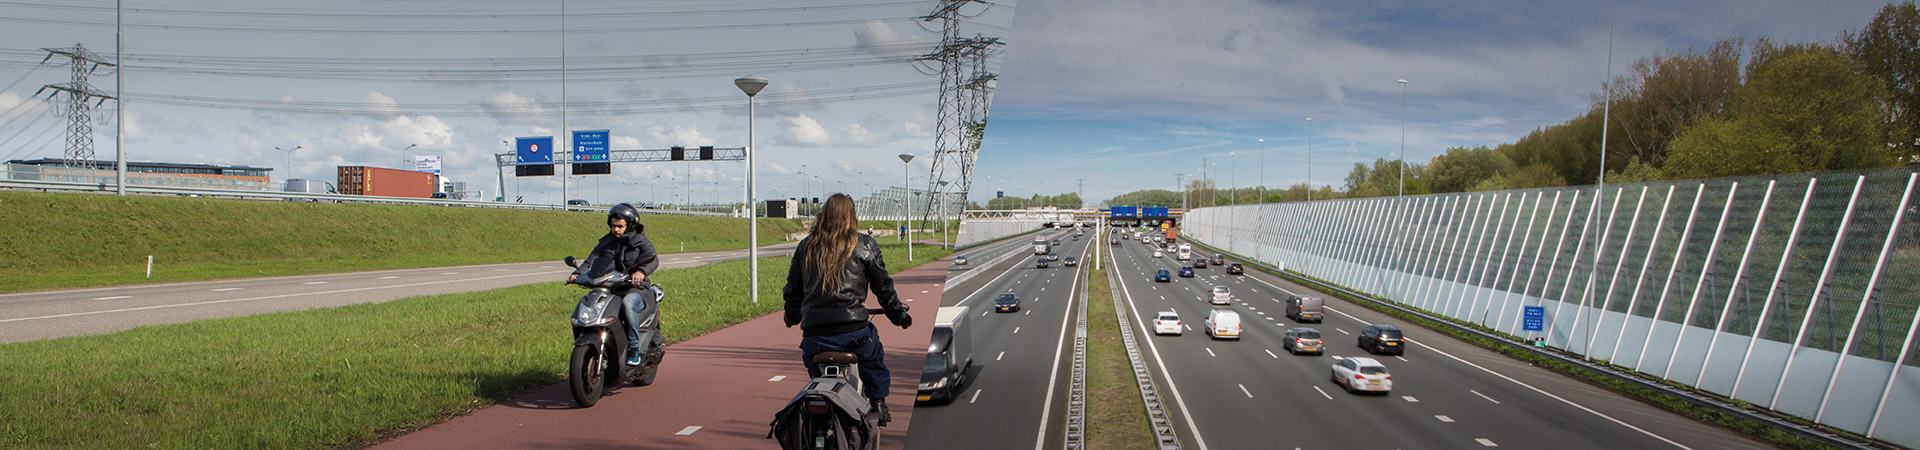 Wij nemen je mee in het verbeteren van de bereikbaarheid van de regio Amsterdam